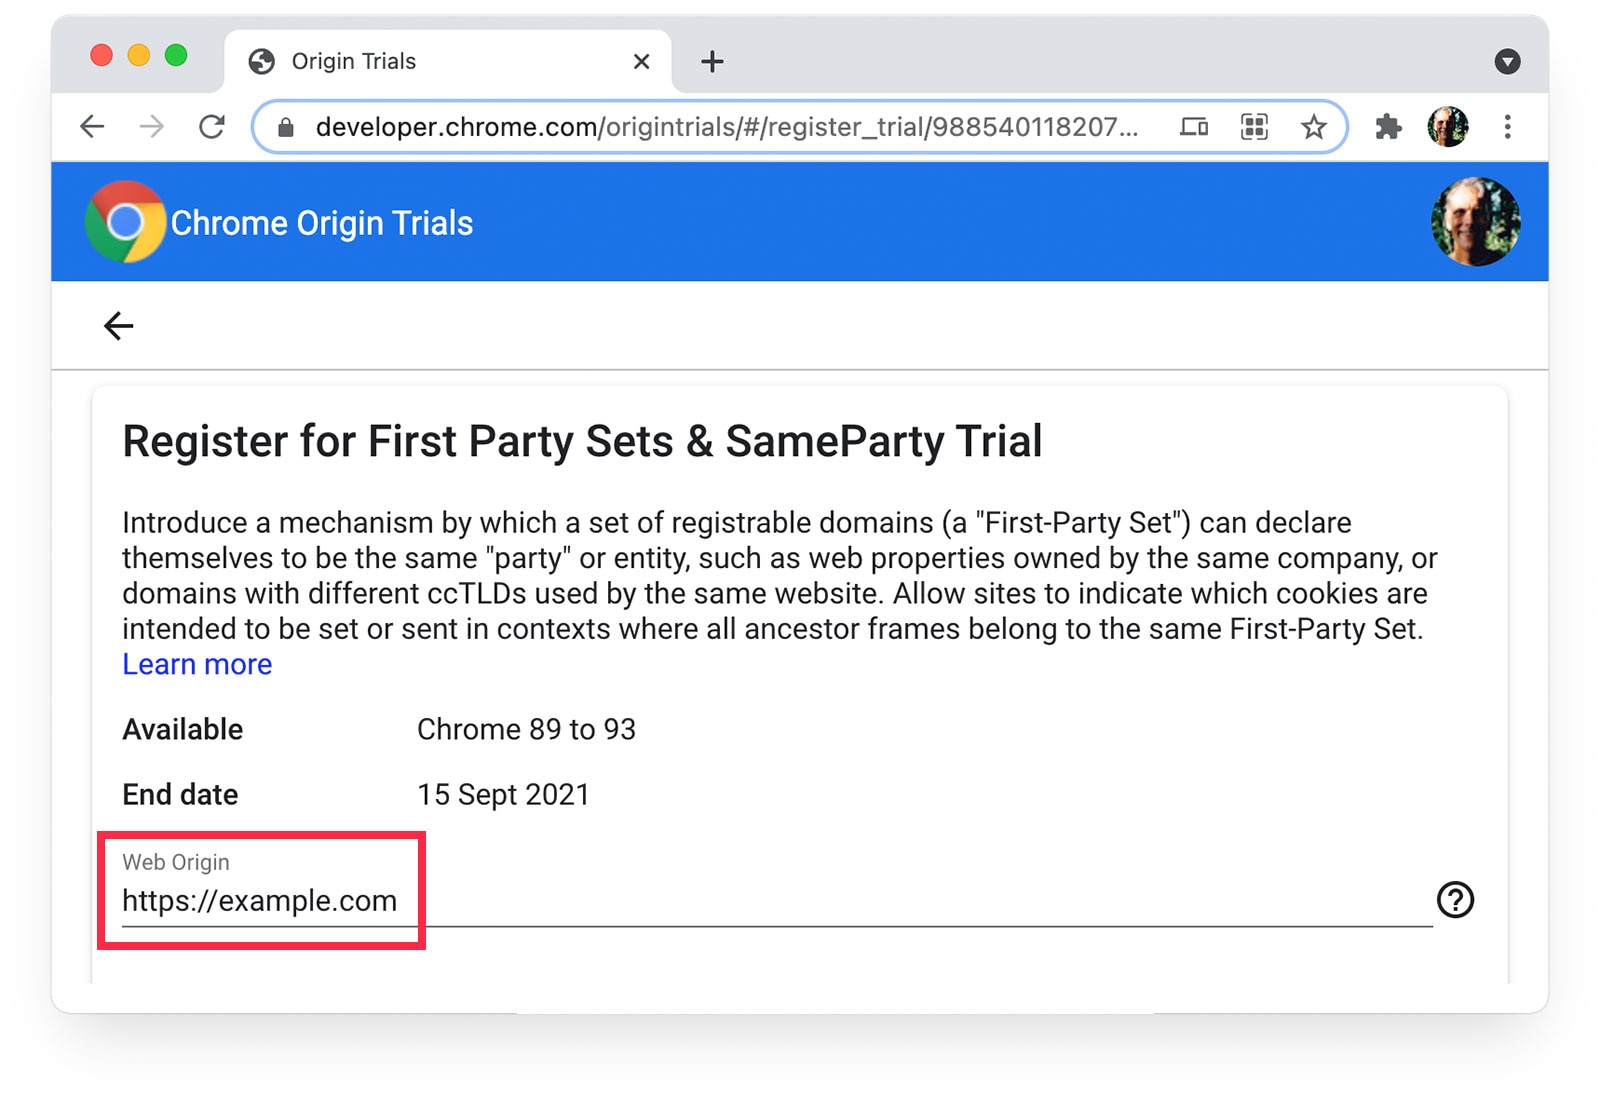 หน้าช่วงทดลองใช้จาก Chrome จากต้นทาง
ซึ่งแสดง https://example.com ที่เลือกเป็นเว็บจากต้นทาง